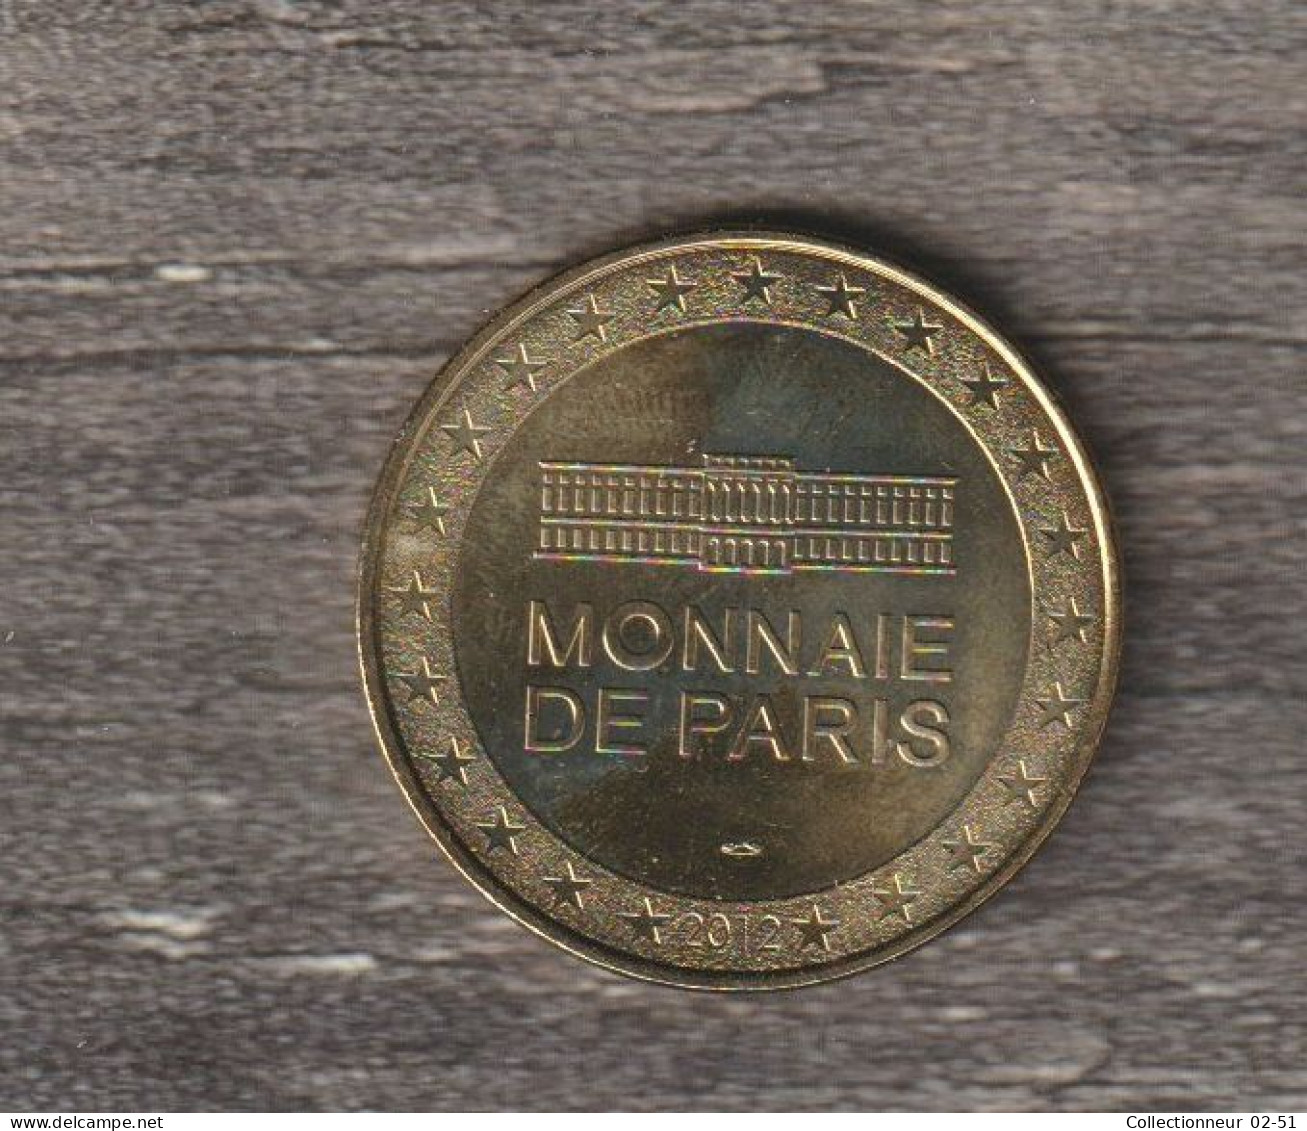 Monnaie De Paris : Eglise Saint Germain Des Près - 2012 - 2012